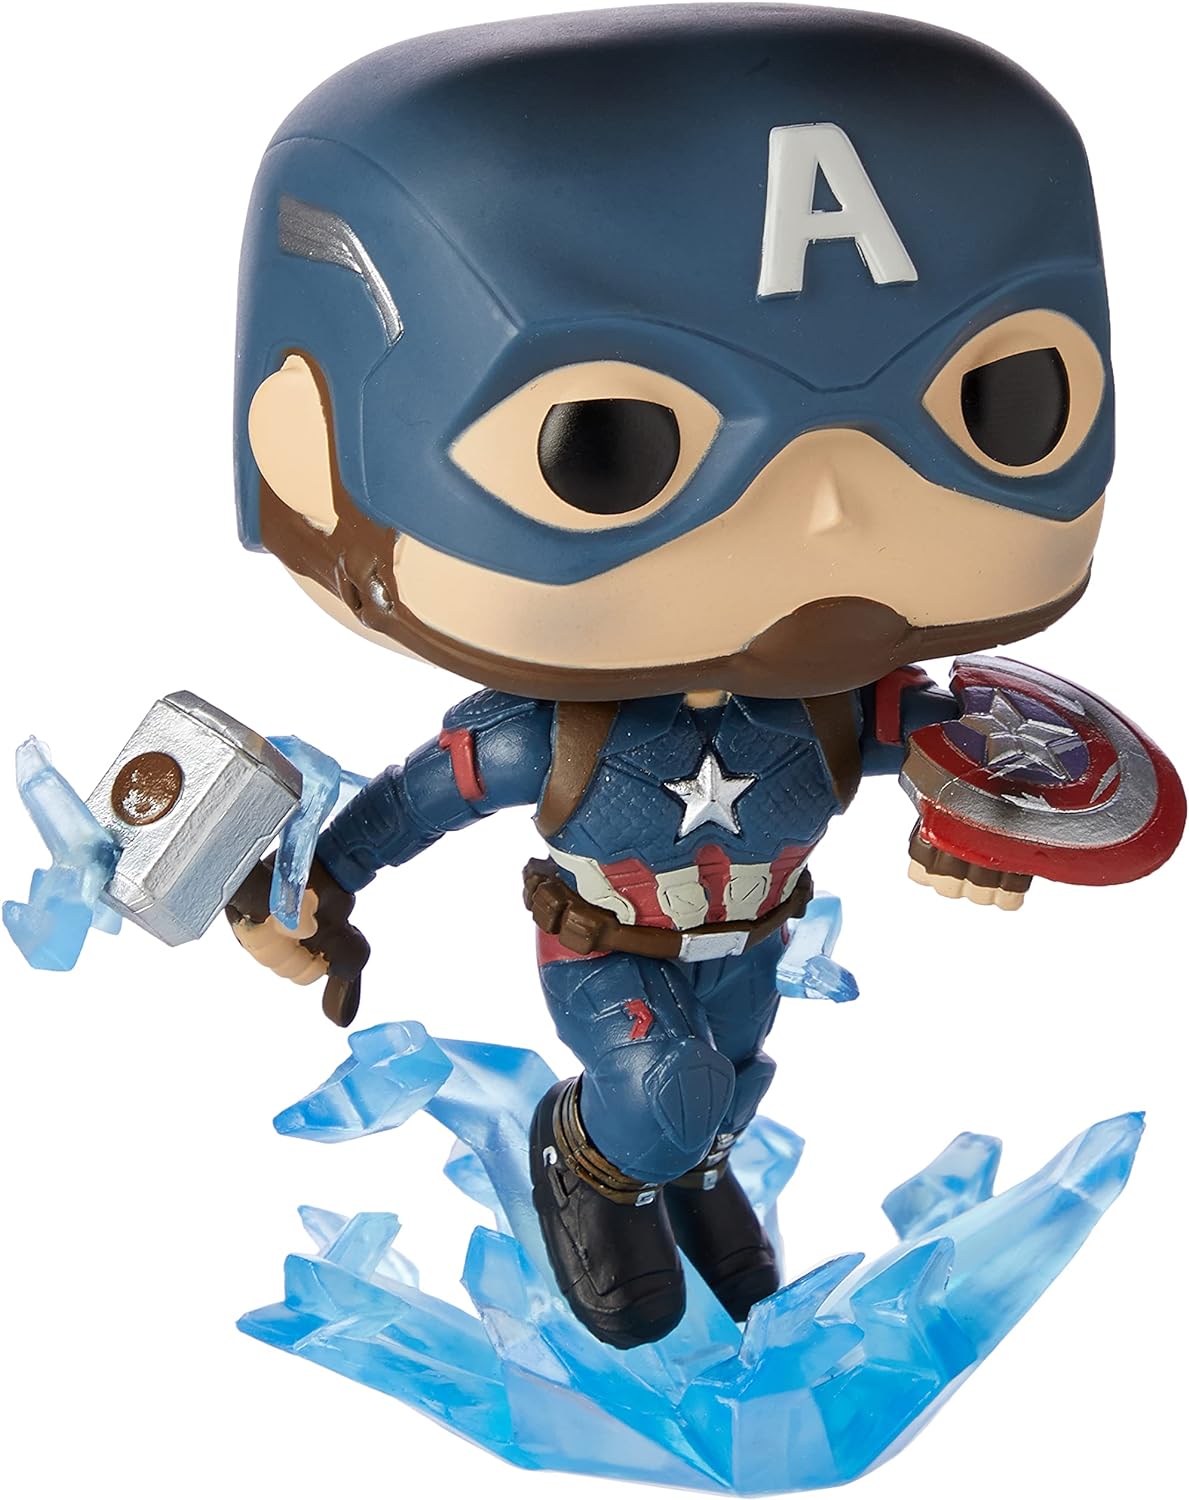 Avengers: Endgame Captain America Broken Shield Funko Pop #573